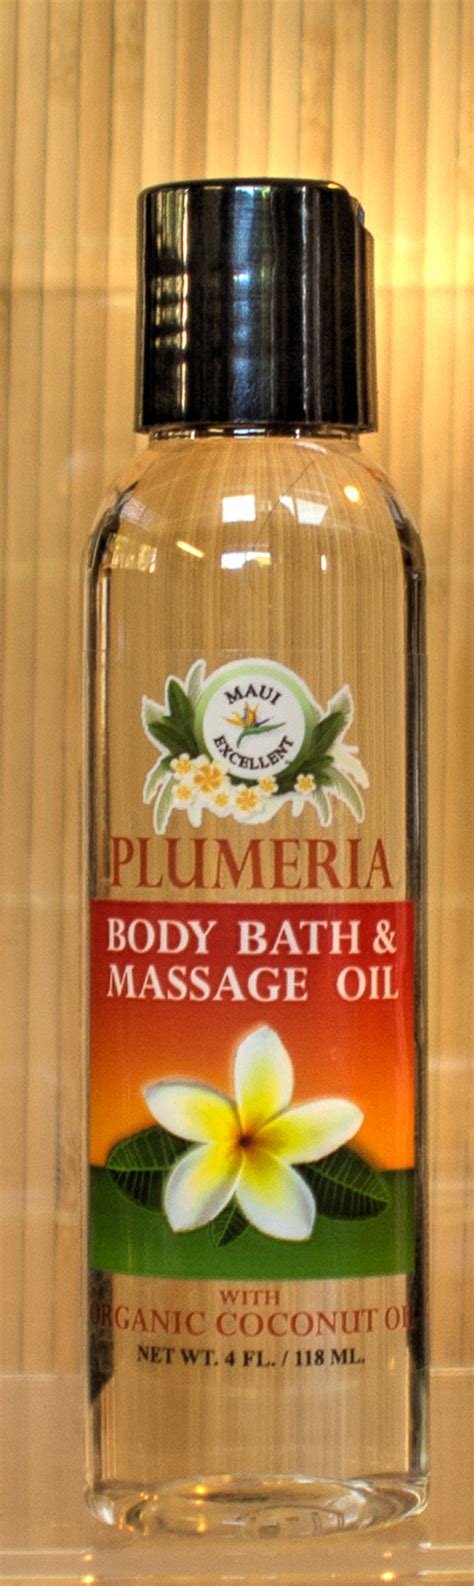 Maui Excellent Plumeria Body And Bath Massage Oil